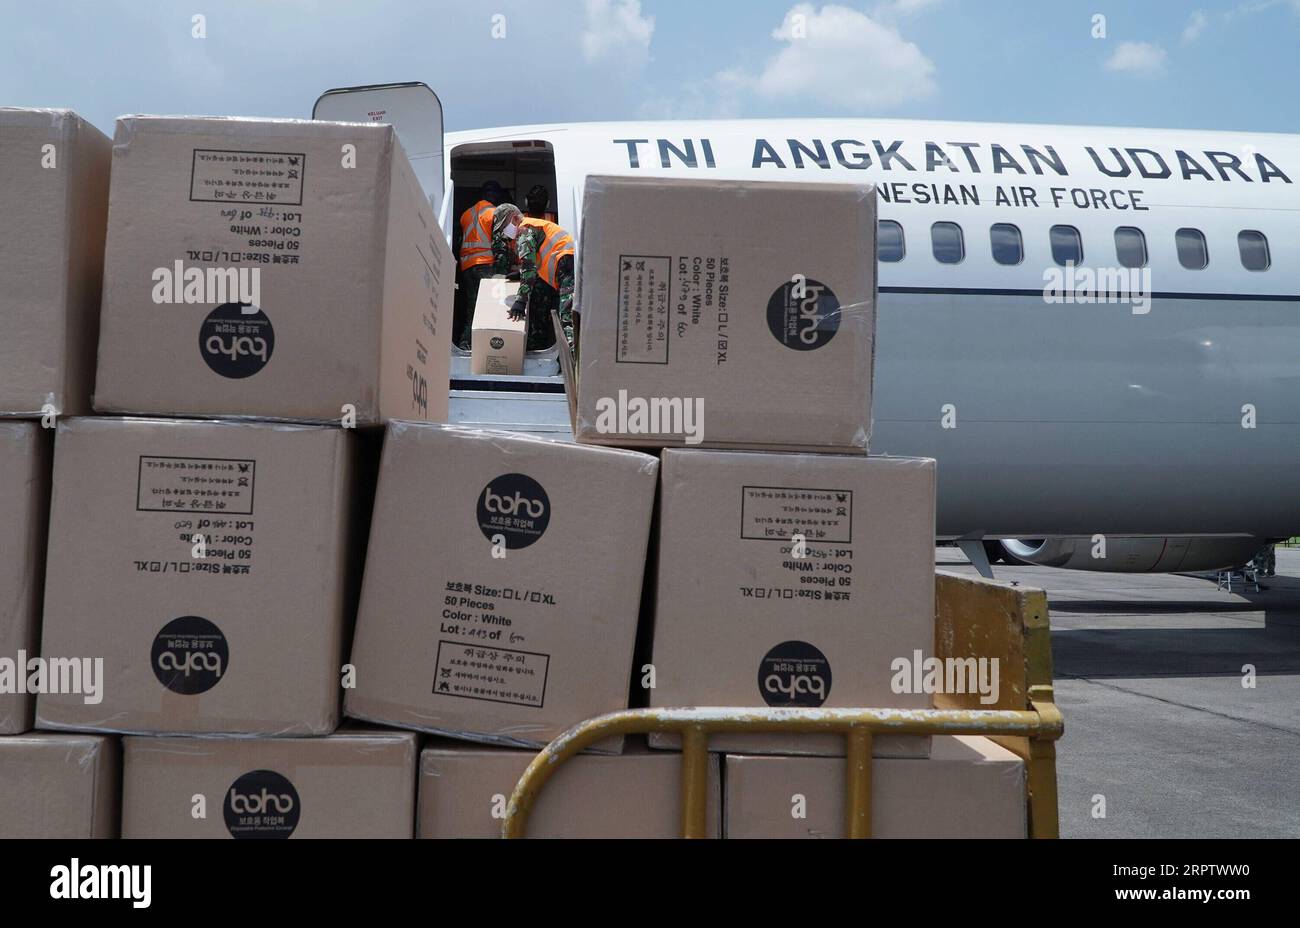 200418 -- NORD-SUMATERA, 18. April 2020 -- Offiziere der indonesischen Luftwaffe entladen Pakete mit Schutzanzügen, die an Rettungssanitäter verteilt werden sollen, aus einem Flugzeug auf der Soewondo Air Forces Base in Medan Nord-Sumatra, Indonesien, 18. April 2020. Die indonesische Regierung kündigte am Samstag 325 neue bestätigte COVID-19-Fälle an, was die Gesamtzahl der Infektionen im Archipelland auf 6.248 erhöht. Auf einer Pressekonferenz sagte Achmad Yurianto, der Sprecher der Regierung für die COVID-19-bezogenen Angelegenheiten, dass es auch 15 neue Todesfälle gibt, was die Gesamtzahl der Todesopfer auf 535 erhöht, die höchste in Stockfoto